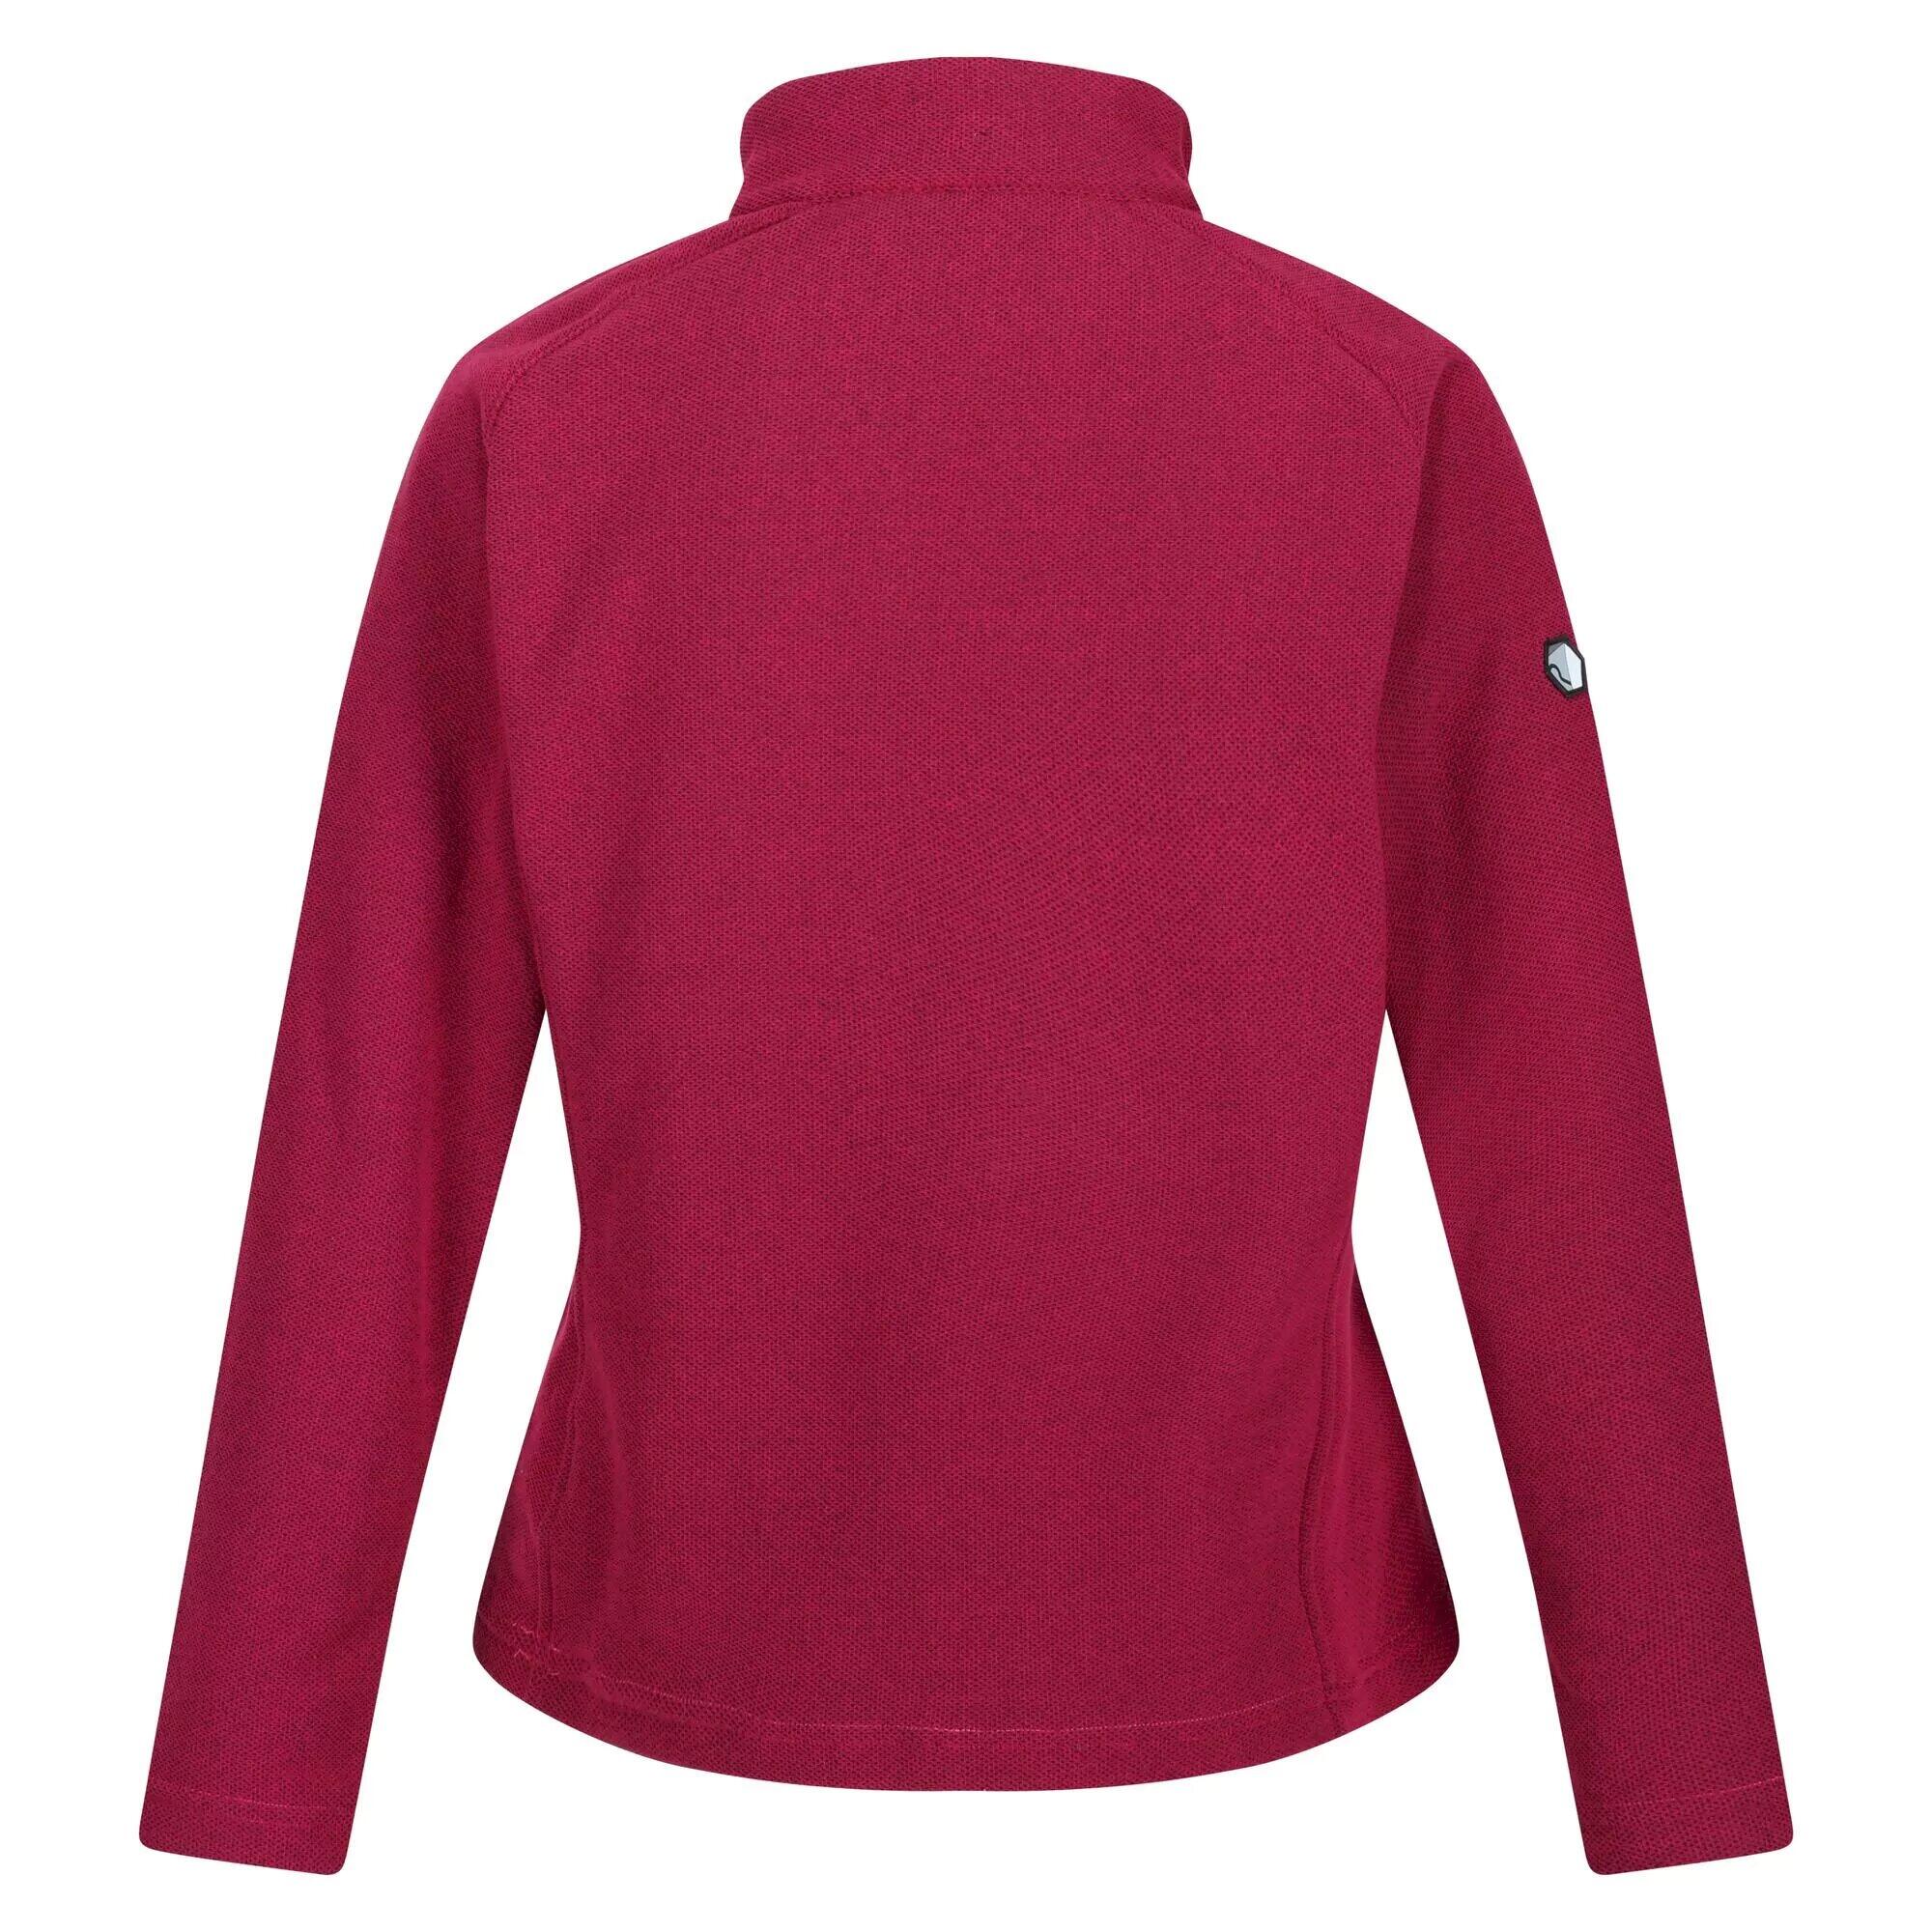 Womens/Ladies Kenger II Quarter Zip Fleece Top (Berry Pink) 2/5